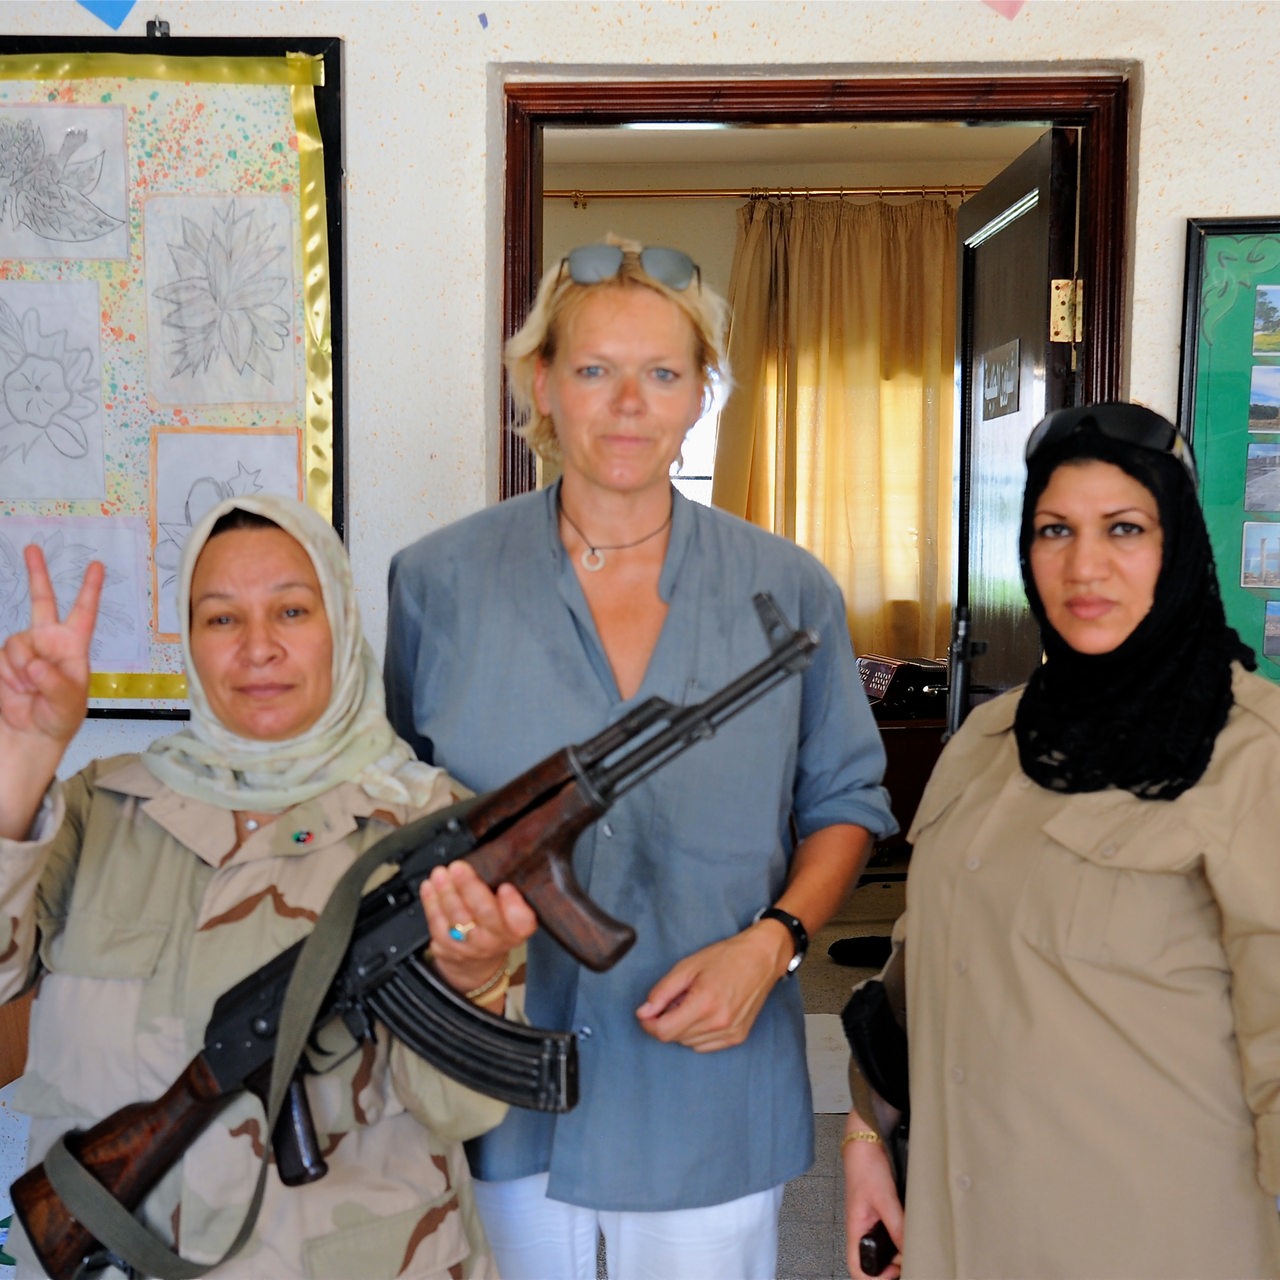 Eine große blonde Frau zwischen zwei dunkelhaarigen Frauen mit Kopftuch. Eine der Frauen trägt ein Gewehr.